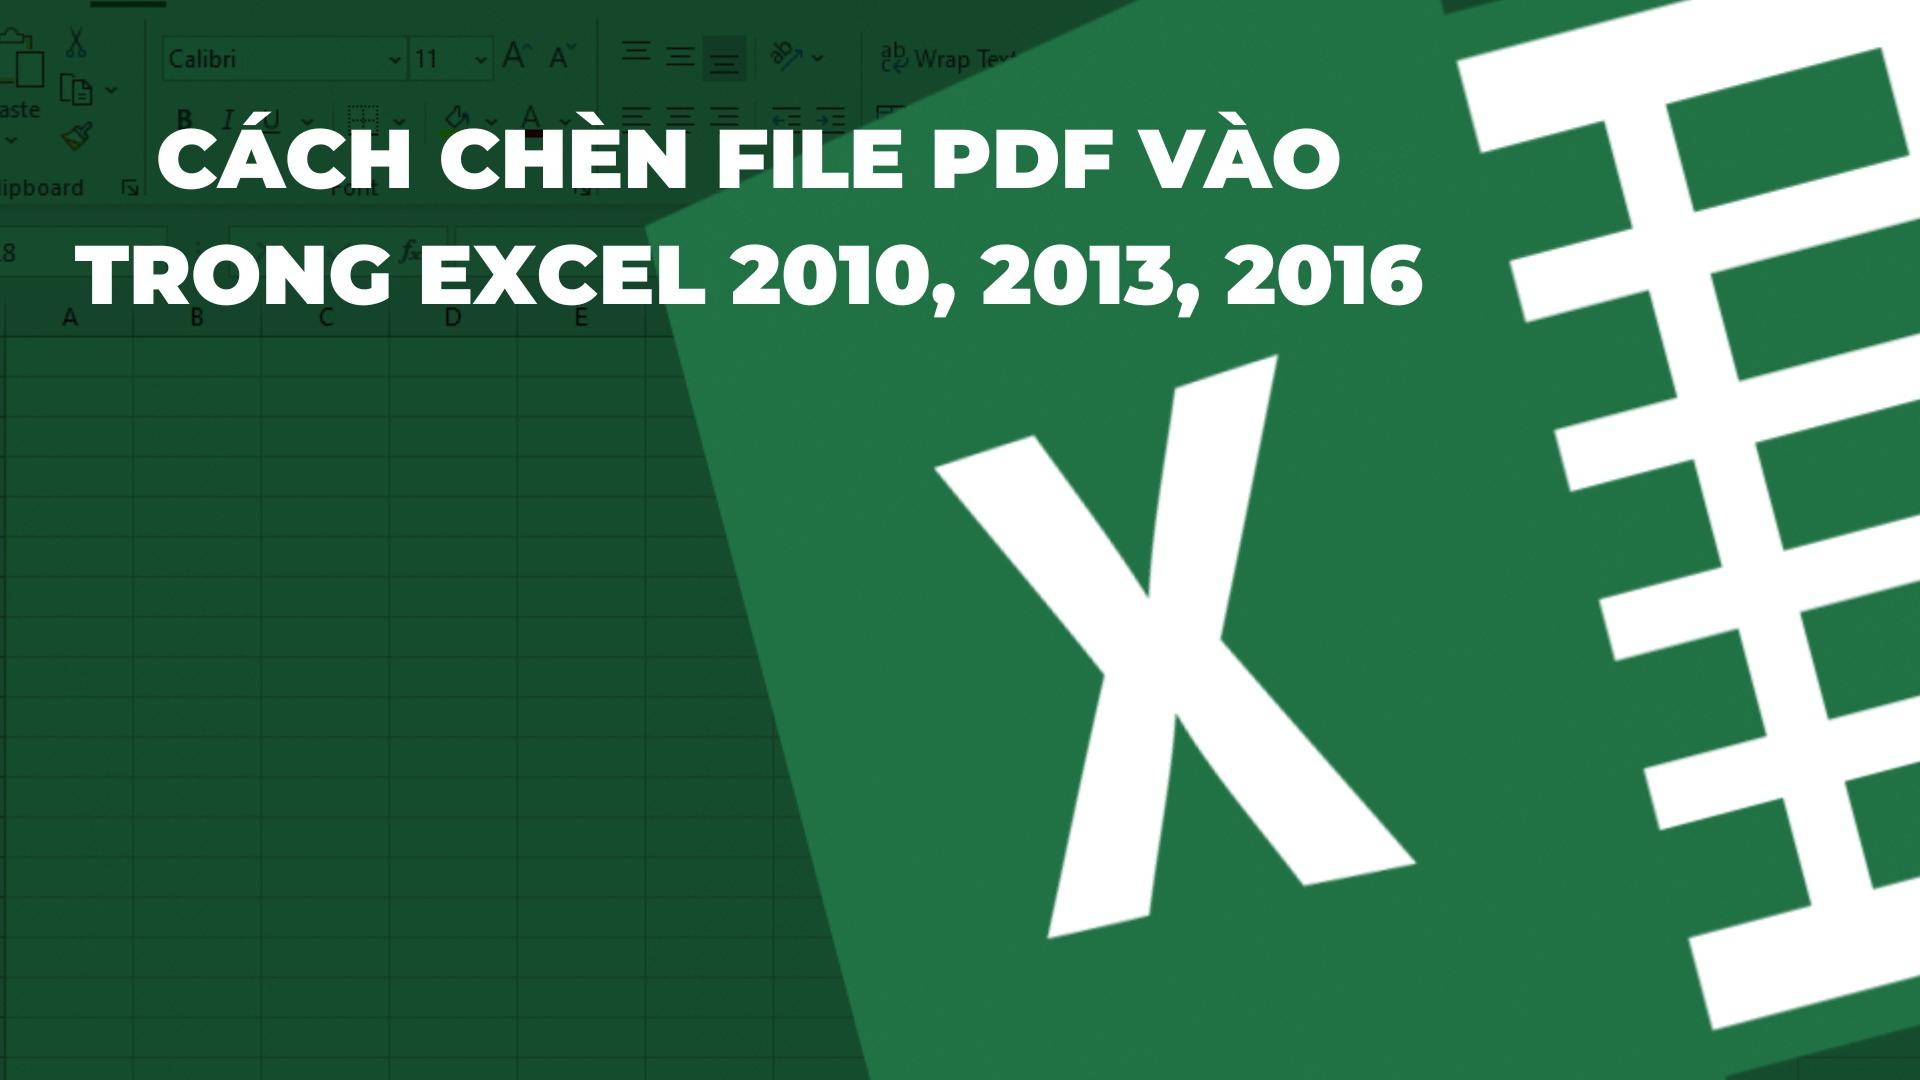 Hướng dẫn chèn file pdf vào trong excel 2010, 2013, 2016 đơn giản